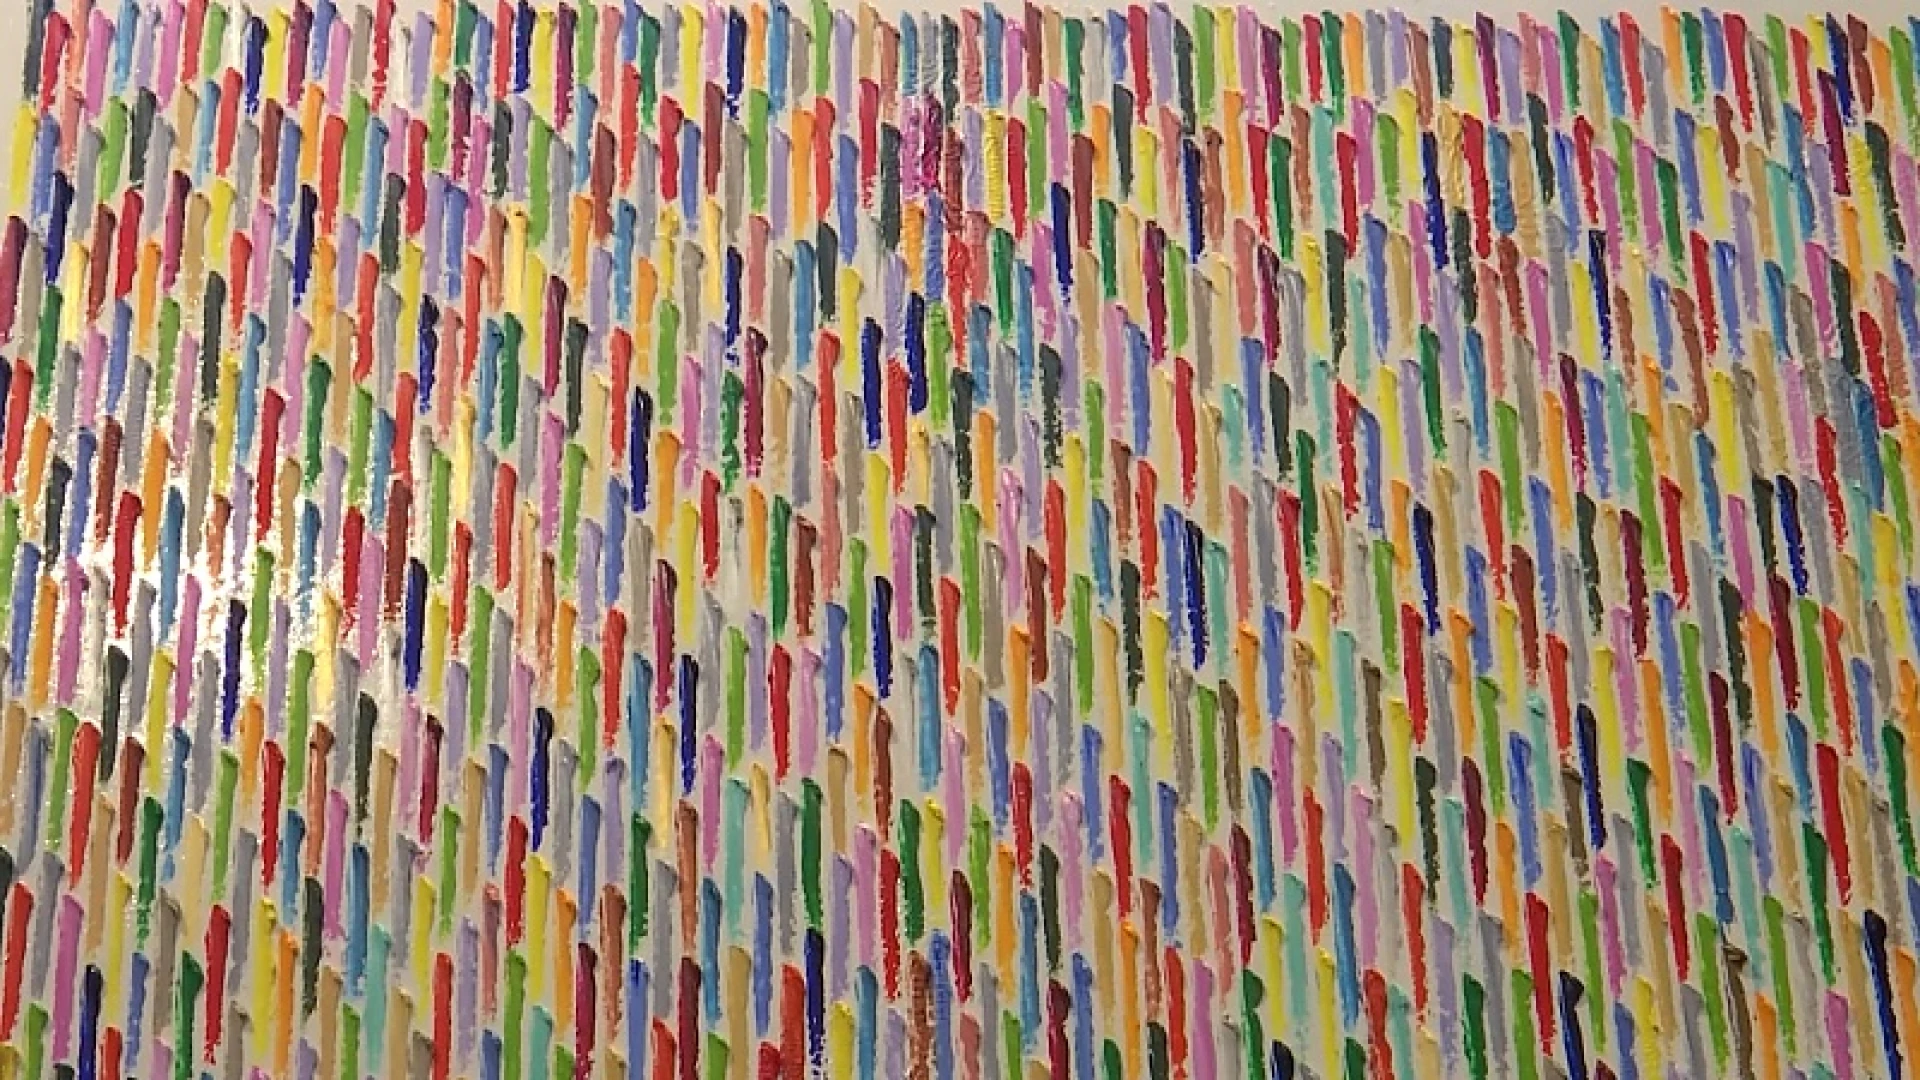 Duizend streepjes op een groot doek, kunstenaar Bart Persoons zoekt rust in de chaos